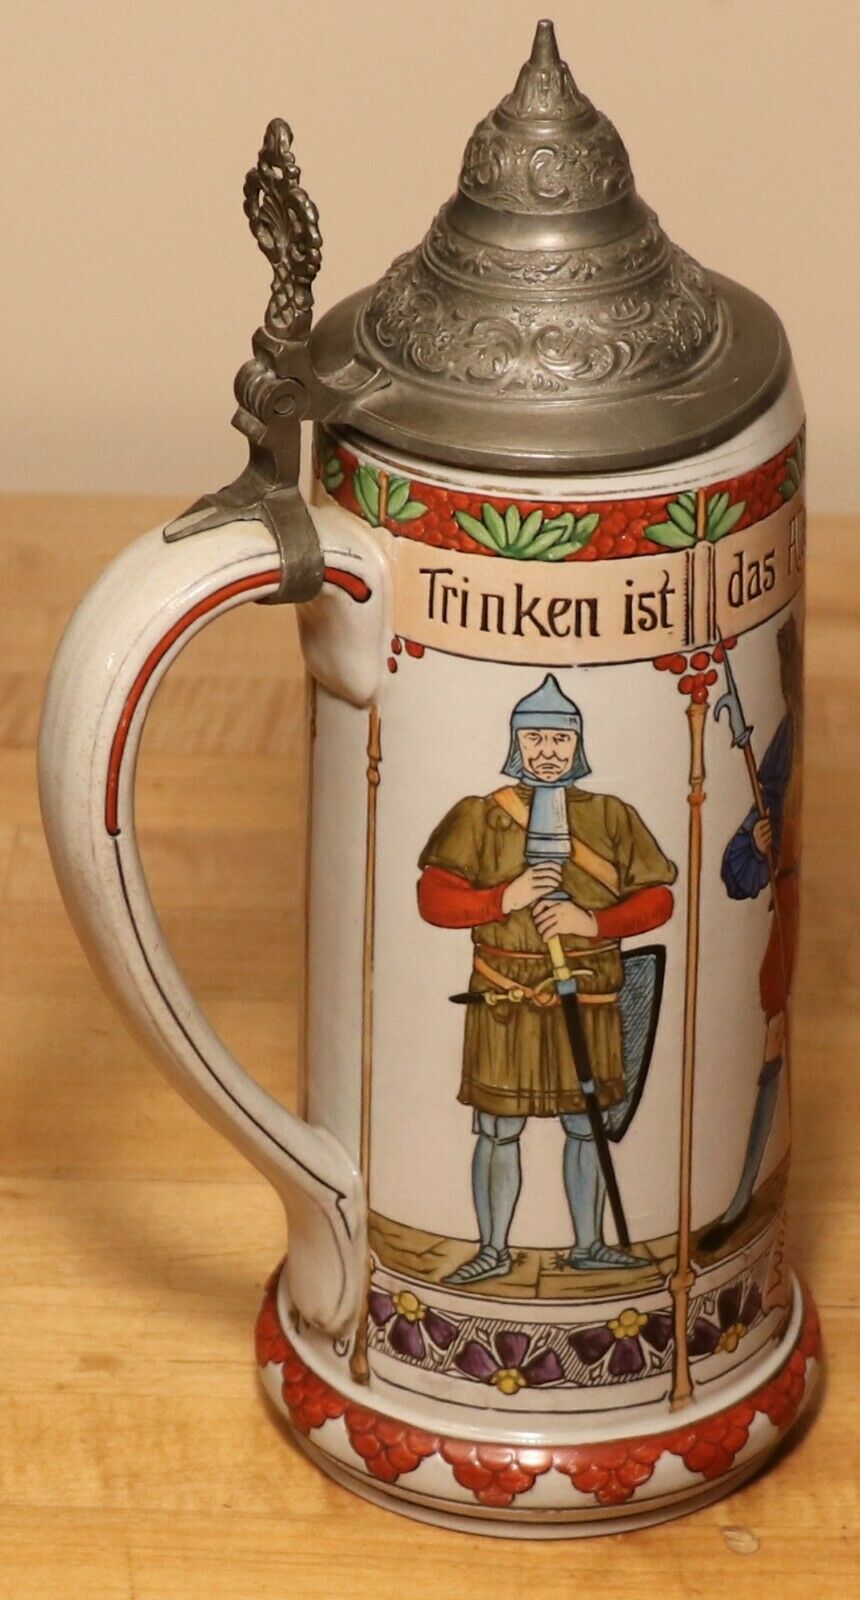 Drinking Through The Ages By Girmscheid 1 Liter German Beer Stein Antique # 938